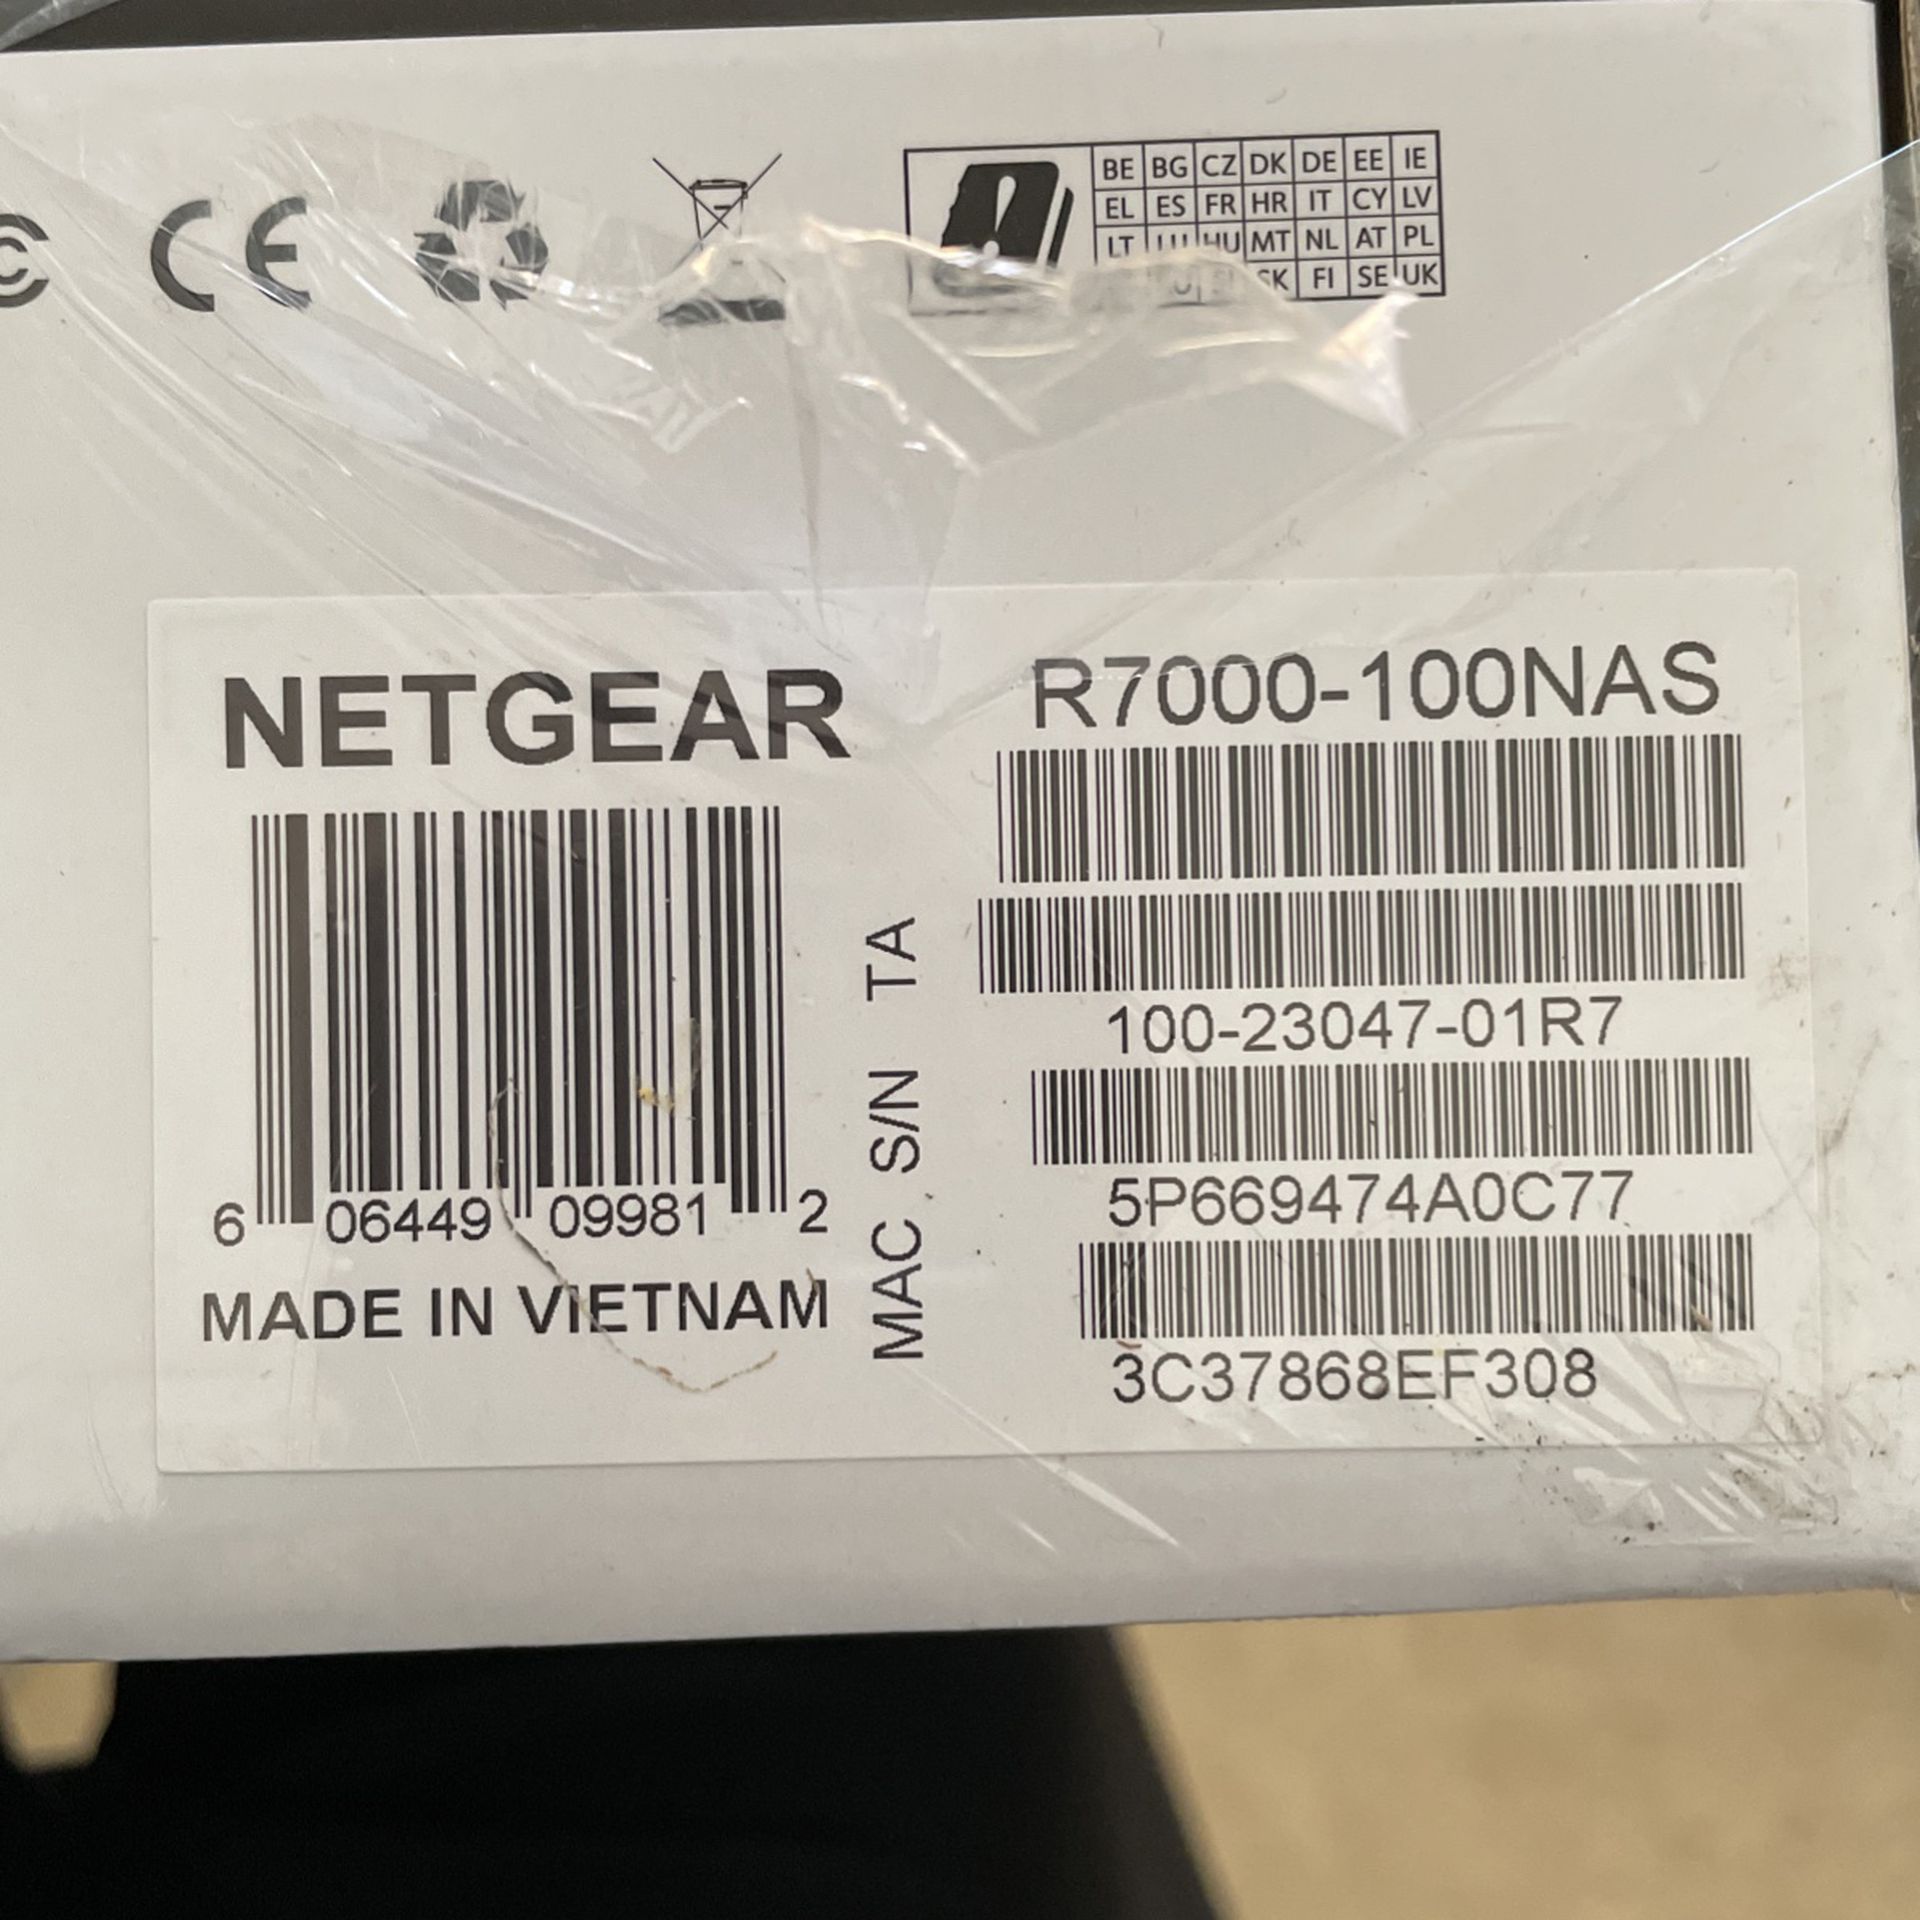 Netgear Nighthawk AC1900 (Model: R7000-100NAS ) Smart Wifi Router